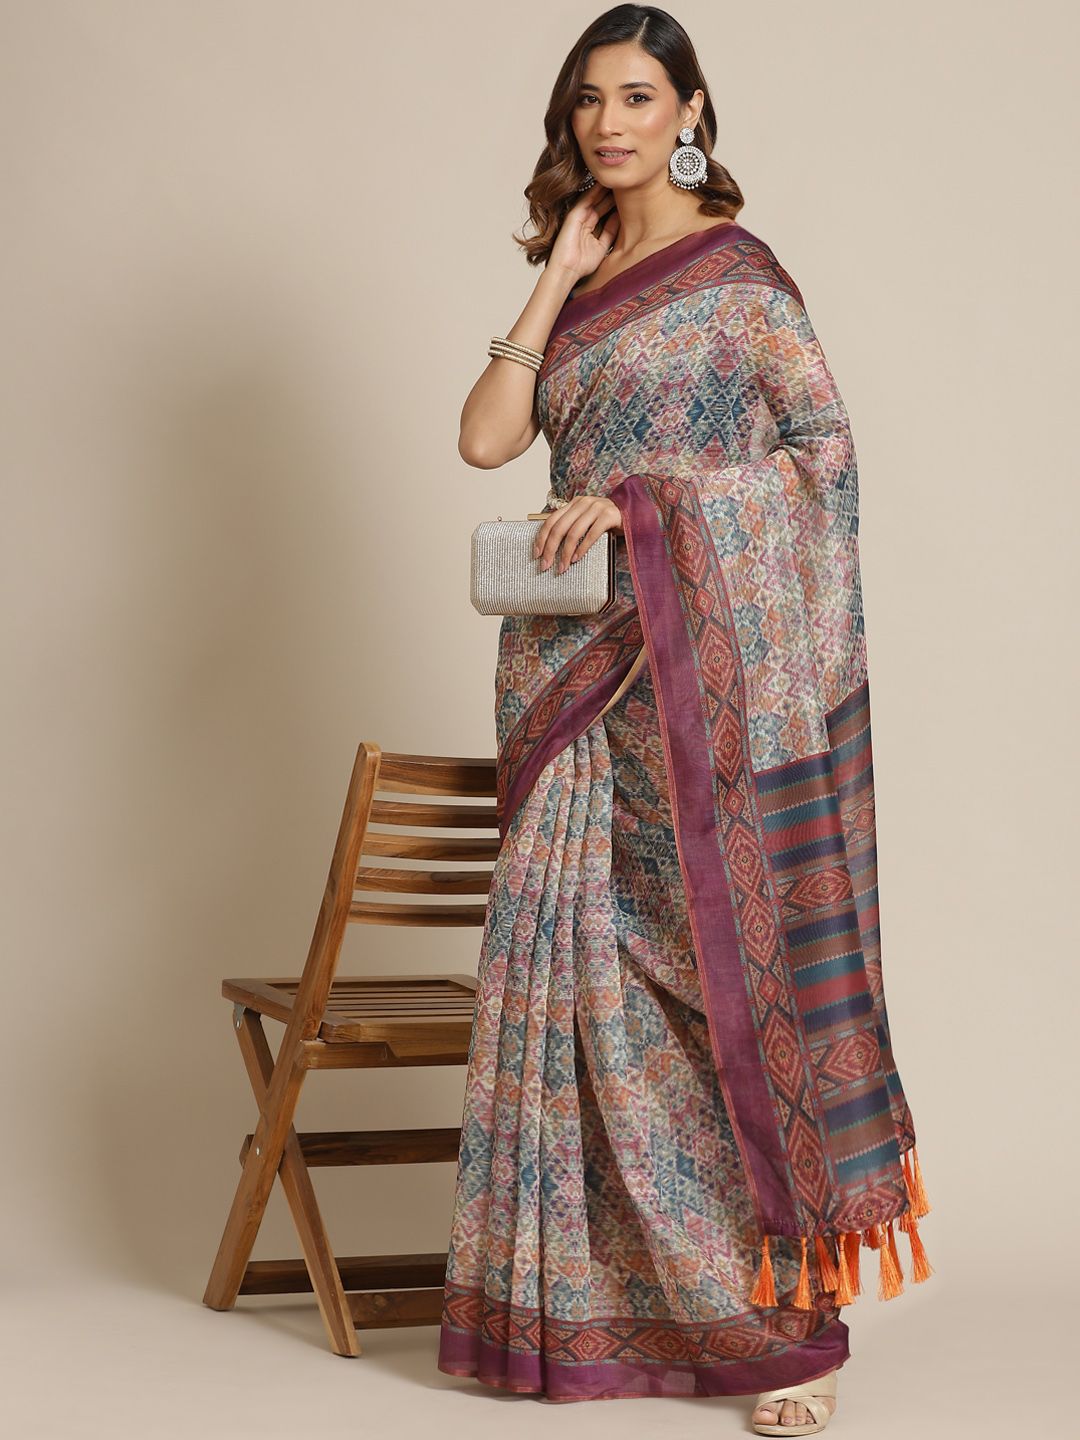 Silk Land Beige & Purple Ethnic Motifs Pure Cotton Chanderi Saree Price in India